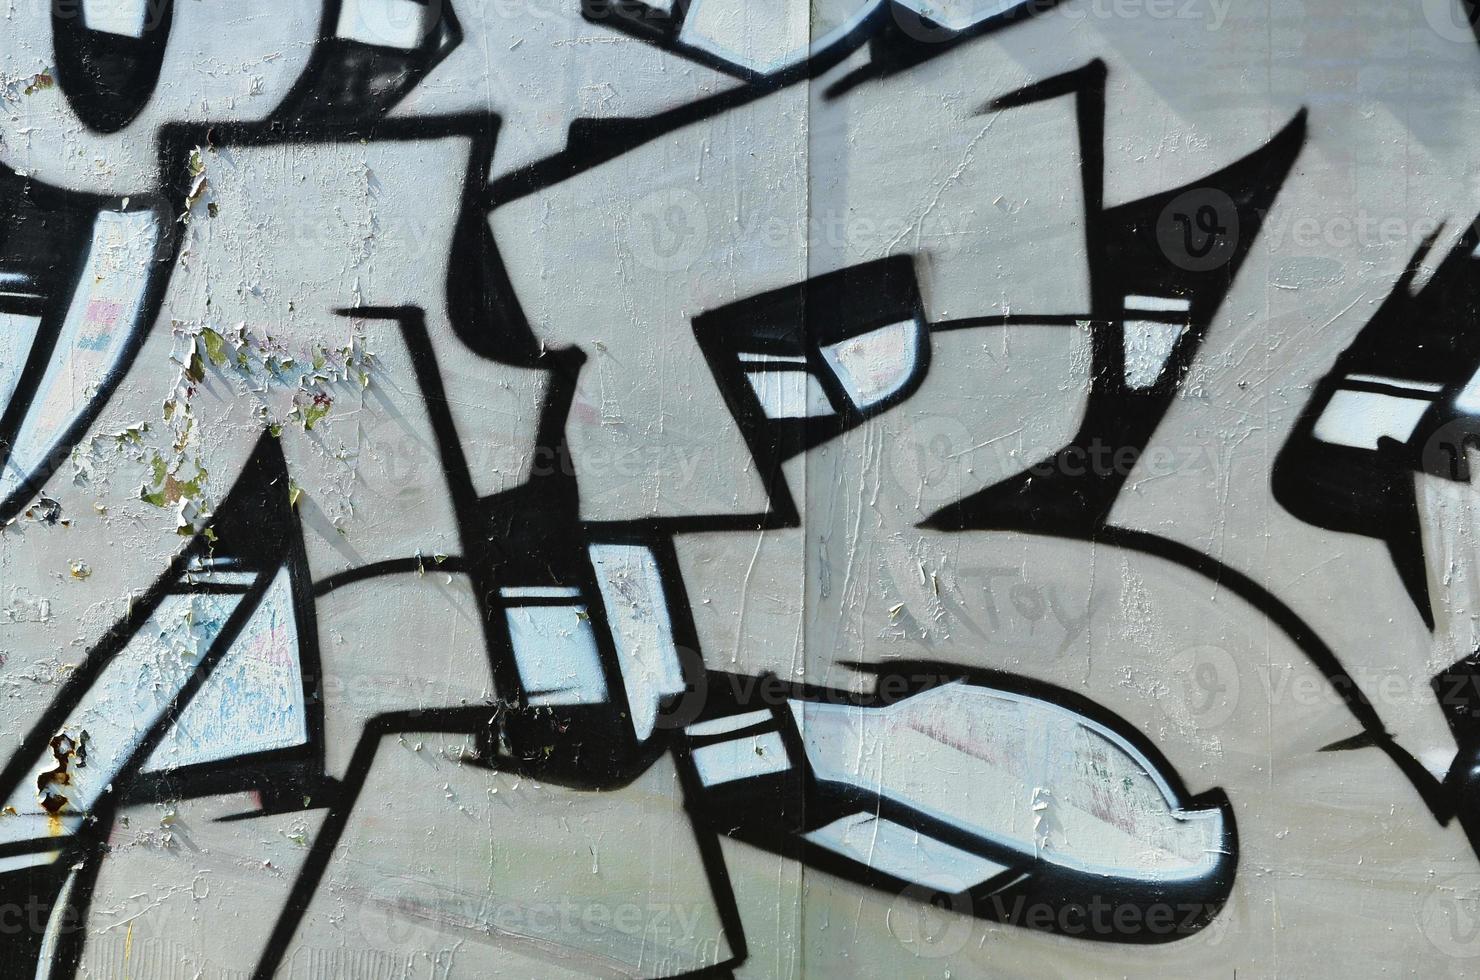 de oud muur, geschilderd in kleur graffiti tekening zilver chroom aërosol verven. achtergrond beeld Aan de thema van tekening graffiti en straat kunst foto